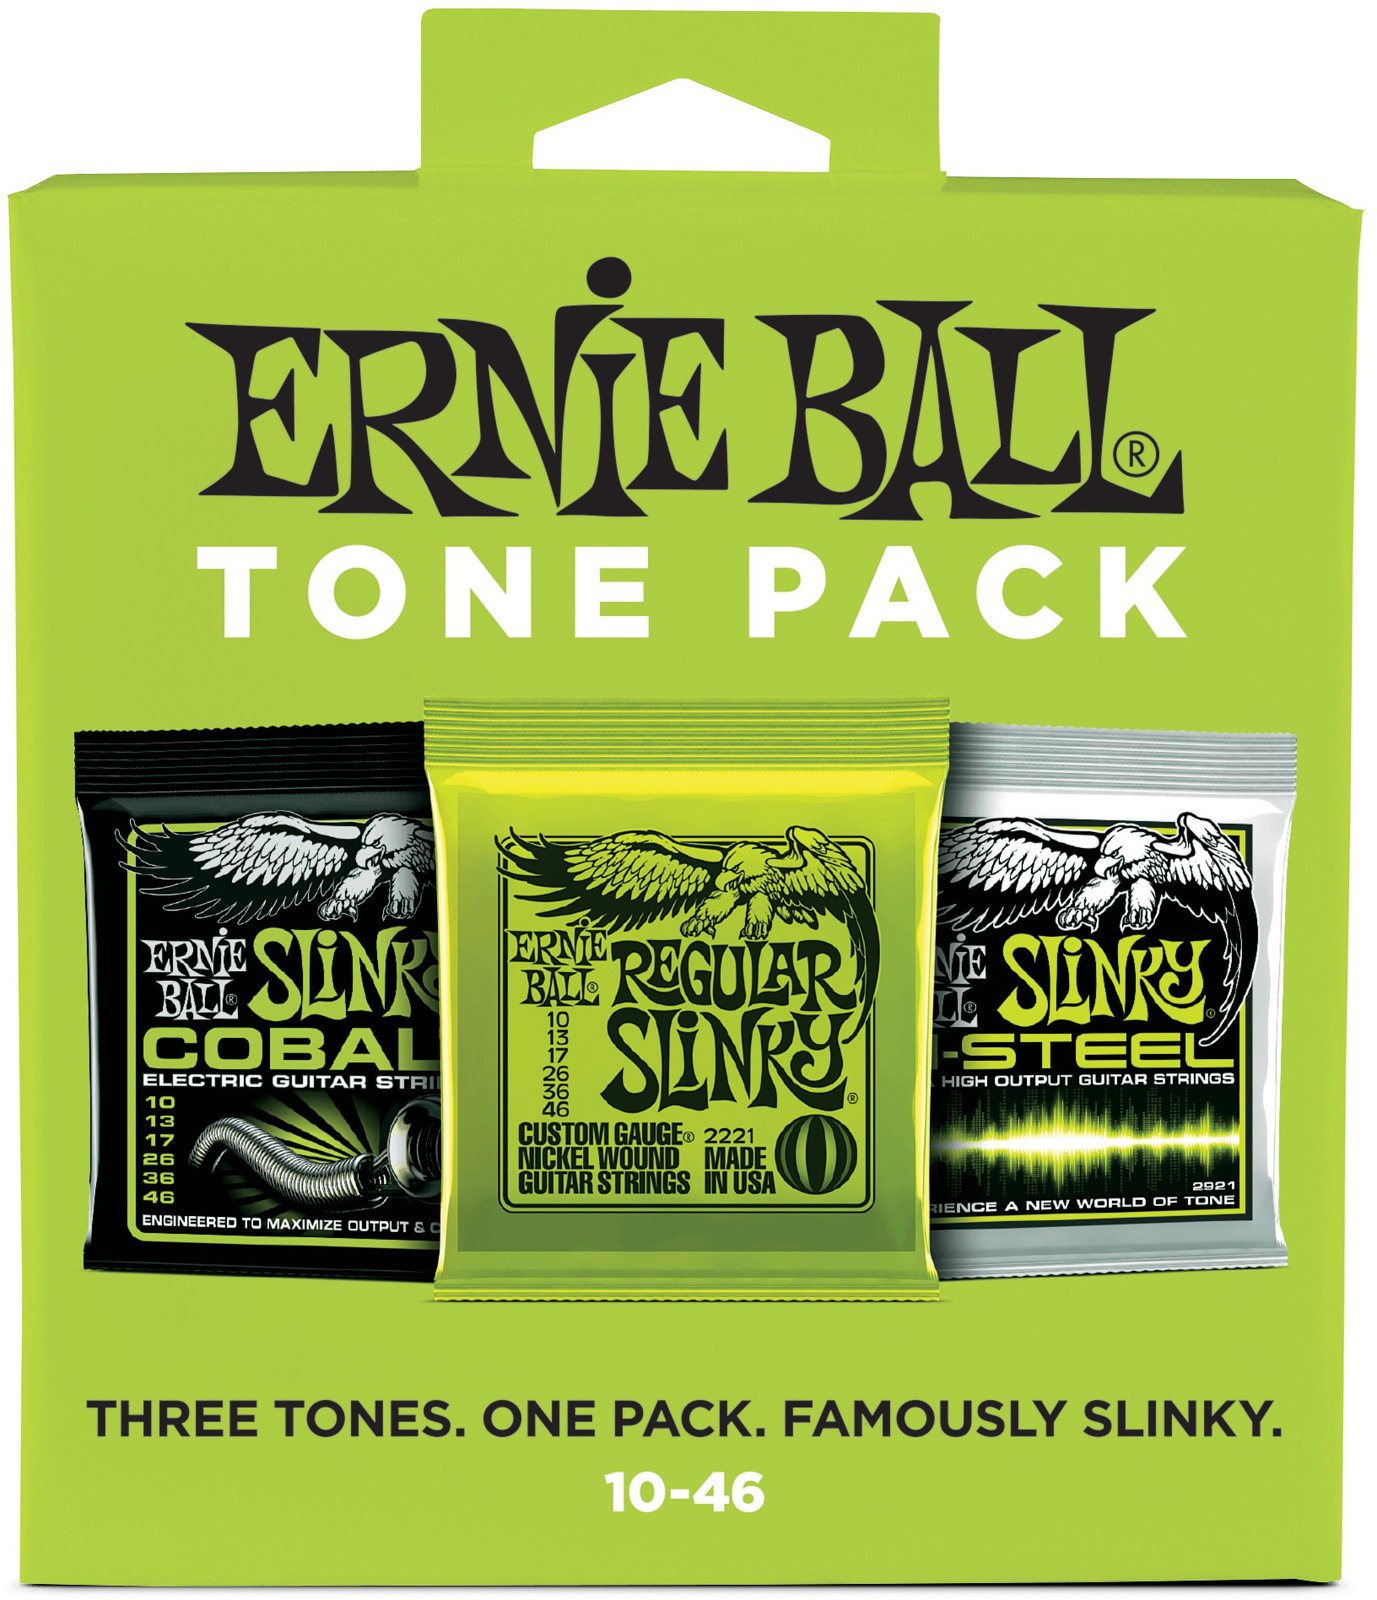 Ernie Ball 3331 Tone Pack Ernie Ball